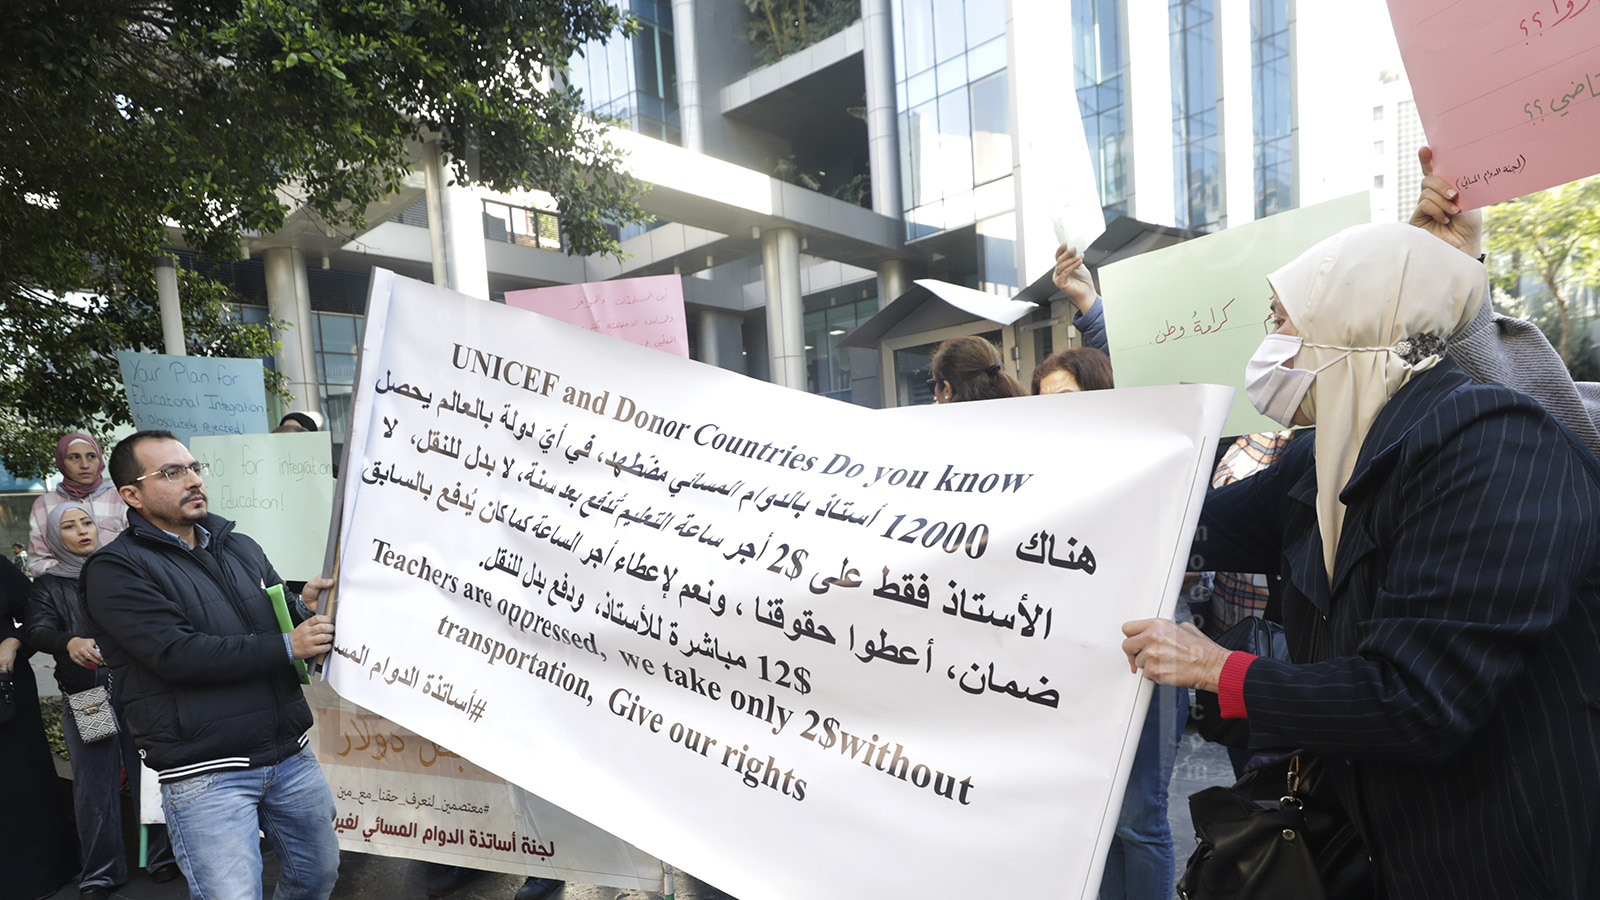 تظاهرة أساتذة التعليم المسائي للاجئين: نريد دولارات اليونيسف